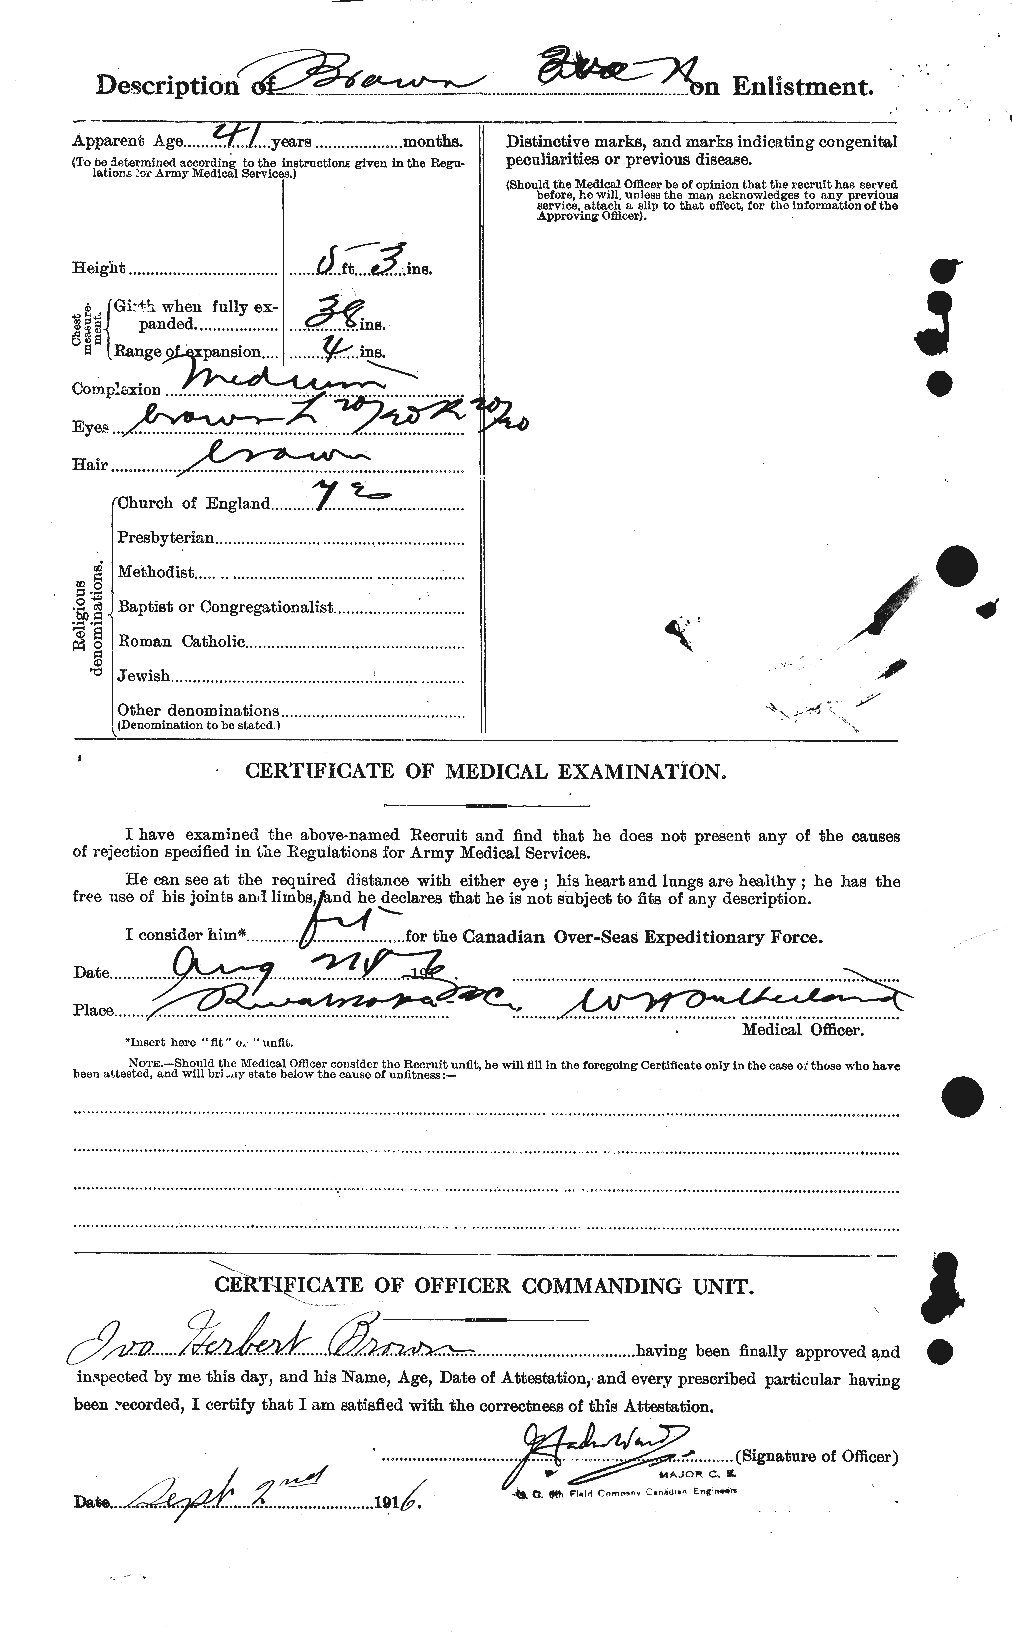 Dossiers du Personnel de la Première Guerre mondiale - CEC 265672b